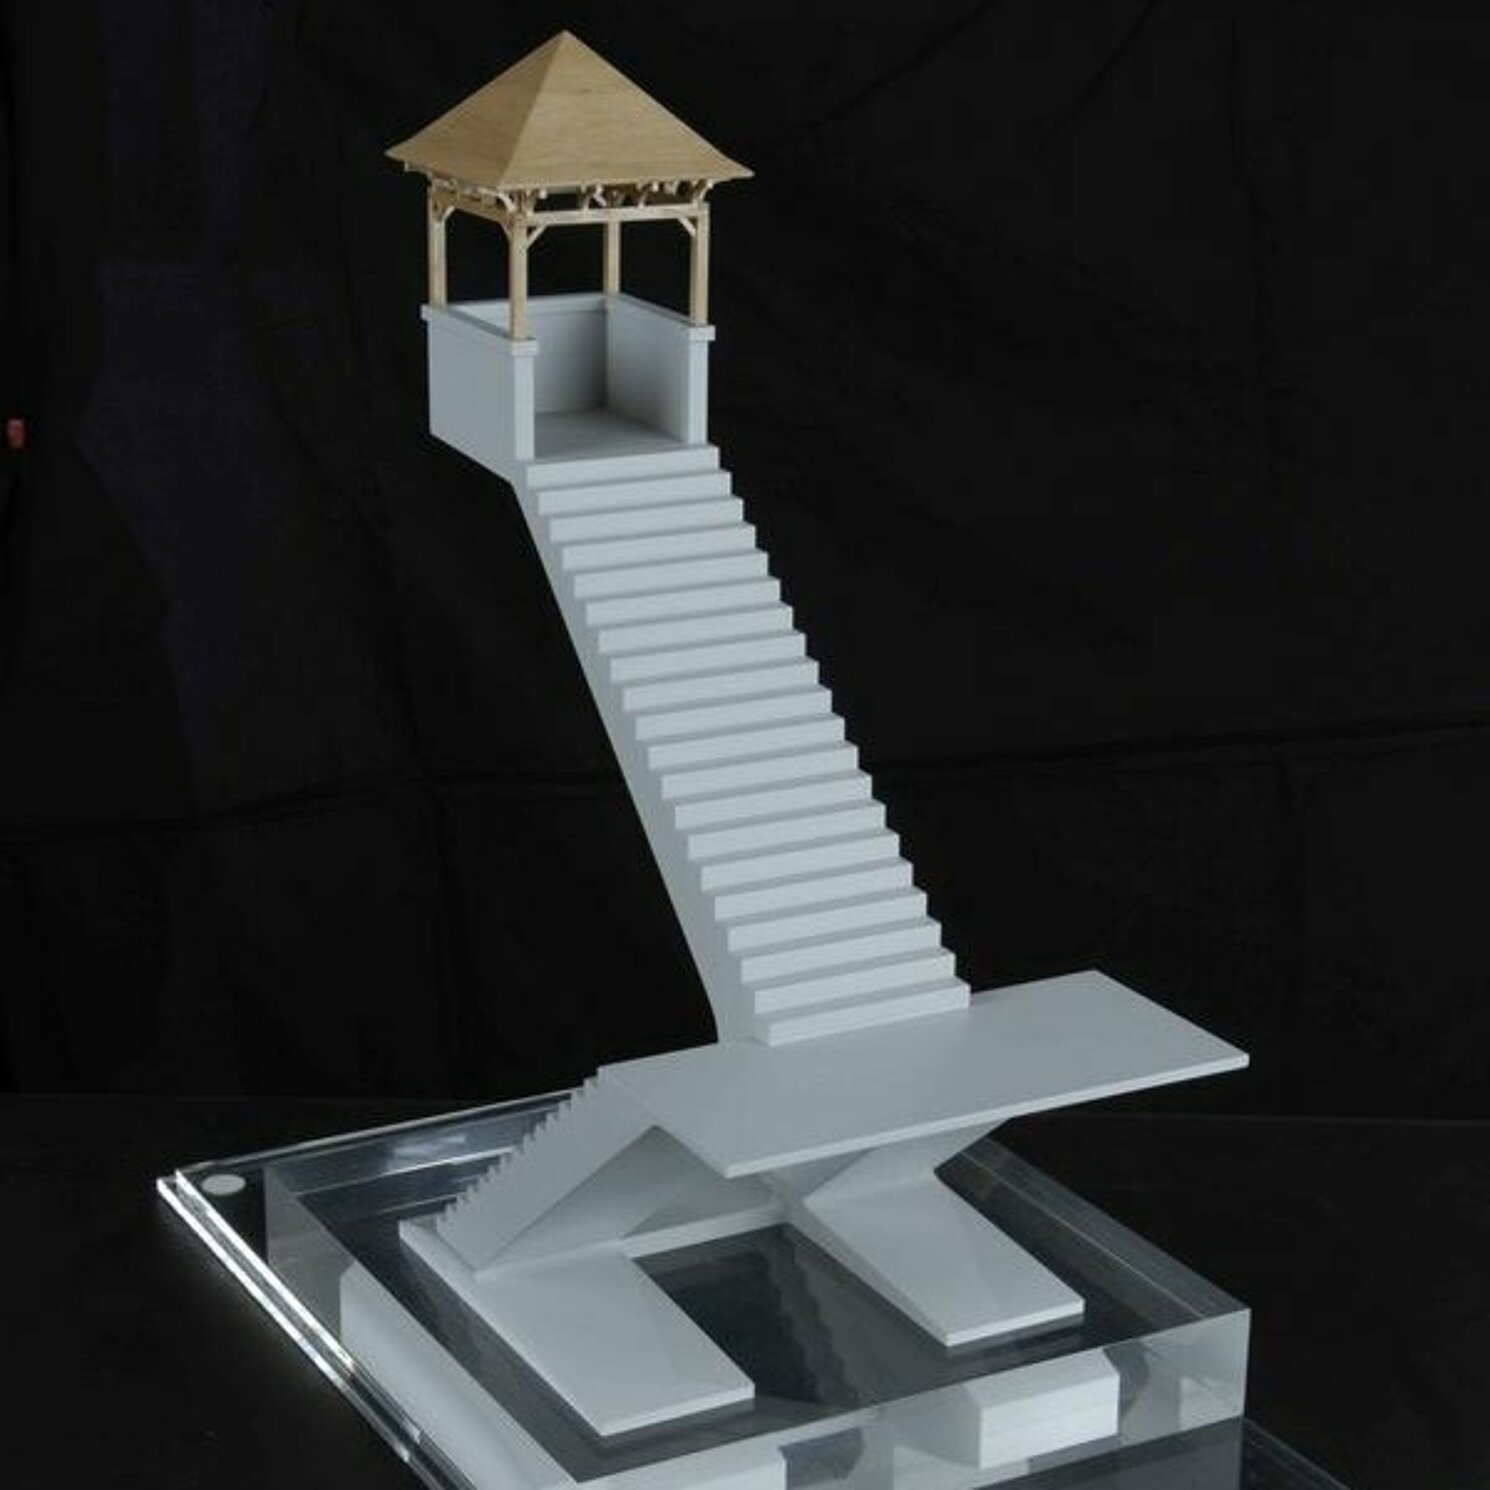 Treppenmodell vor schwarzem Hintergrund